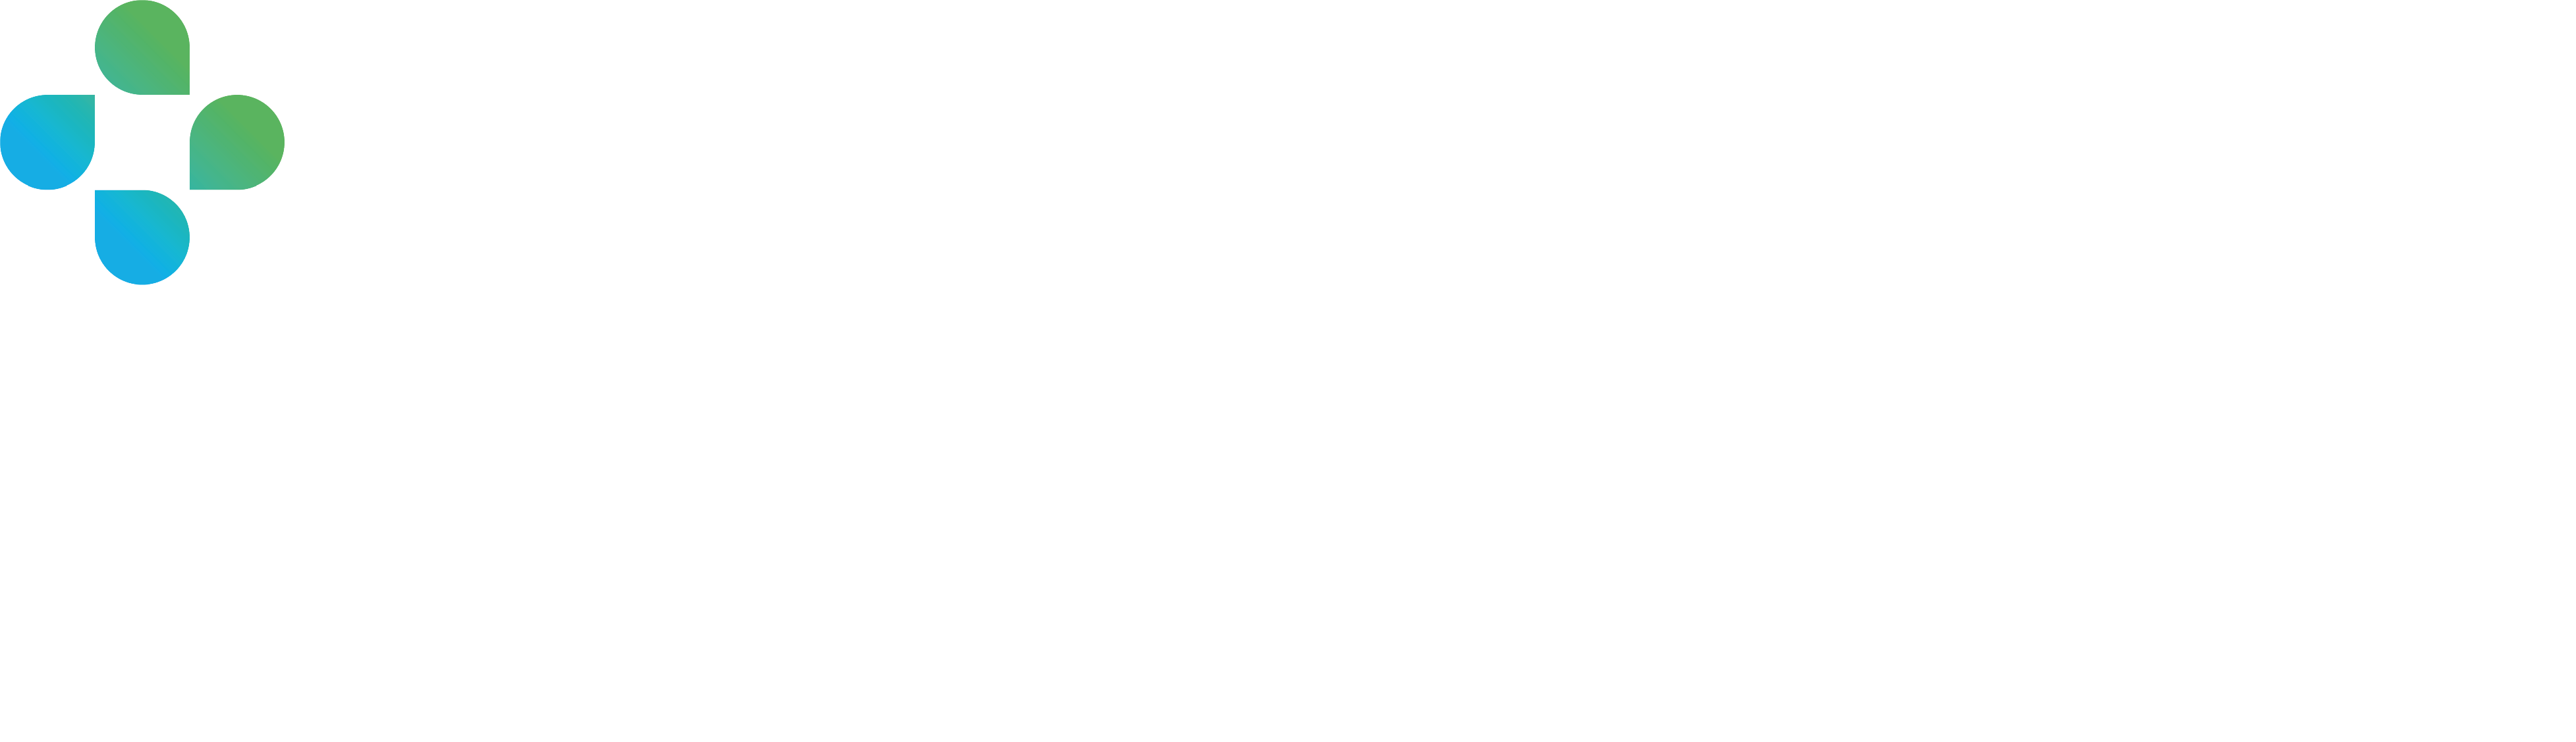 comjoodoc - Unsere Services für Softwareanbieter